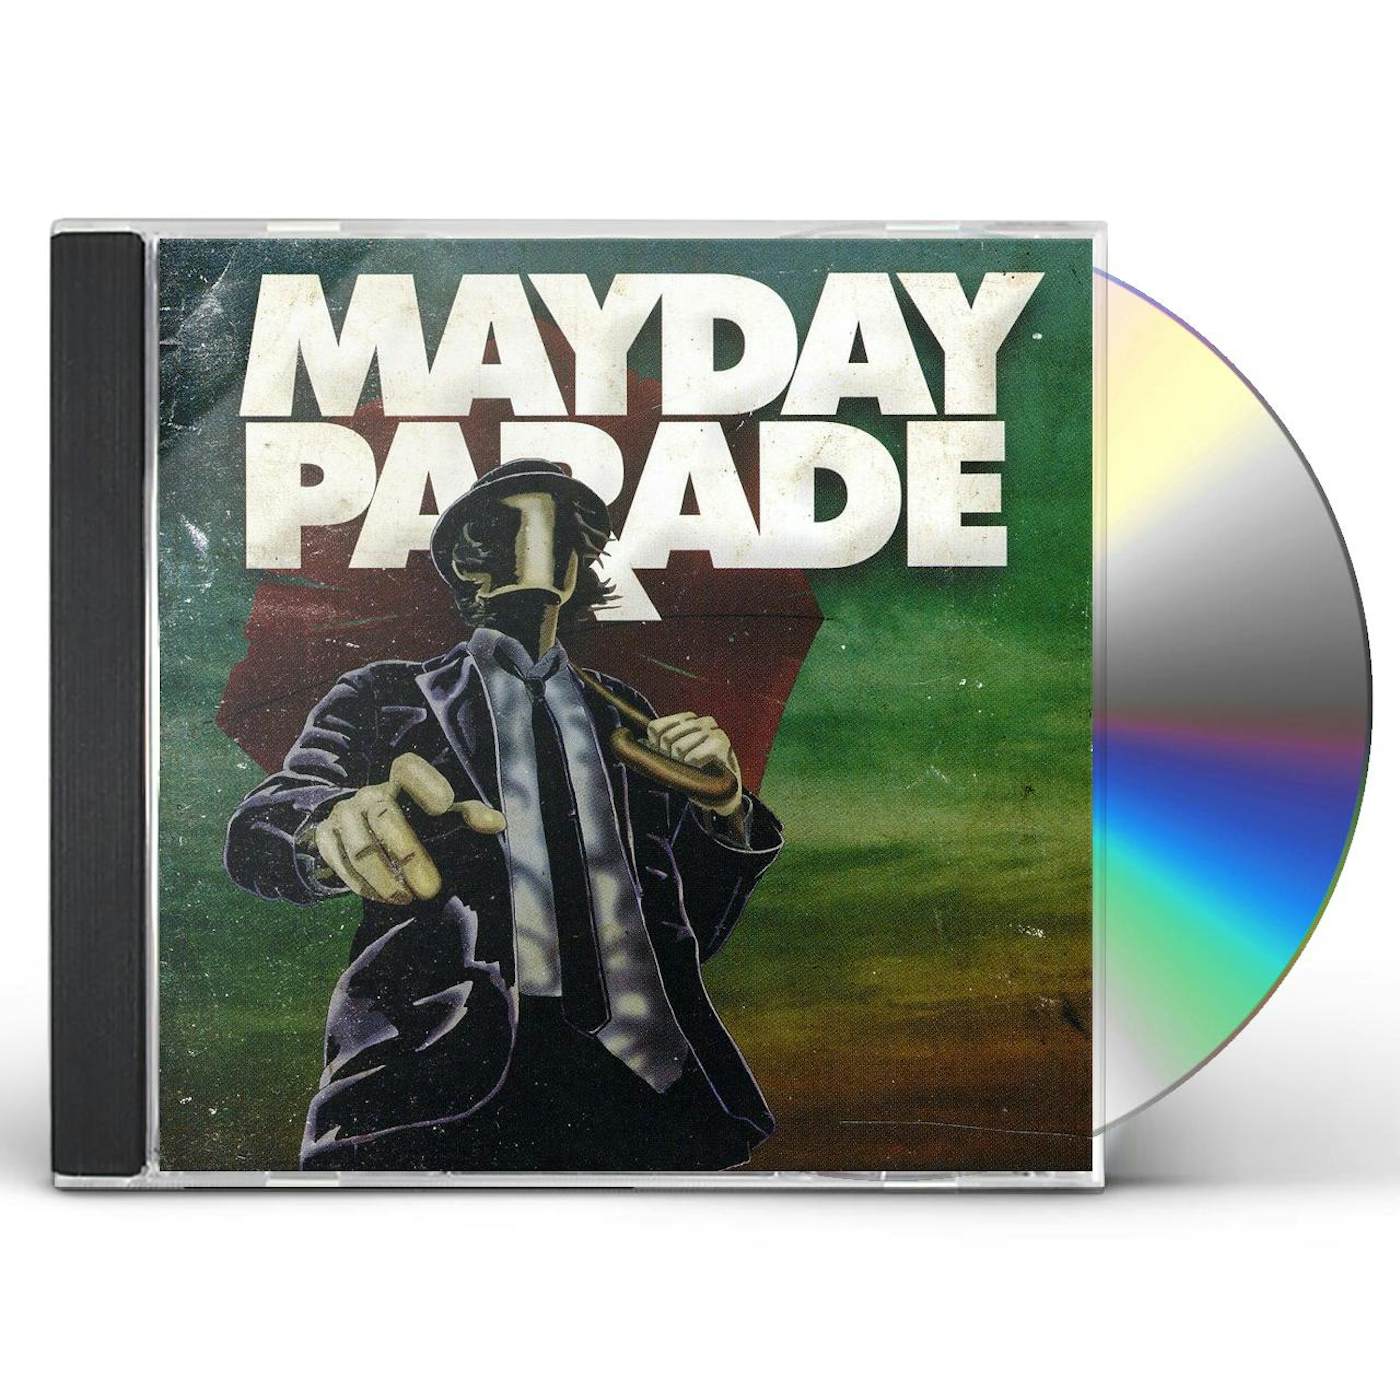 MAYDAY PARADE CD